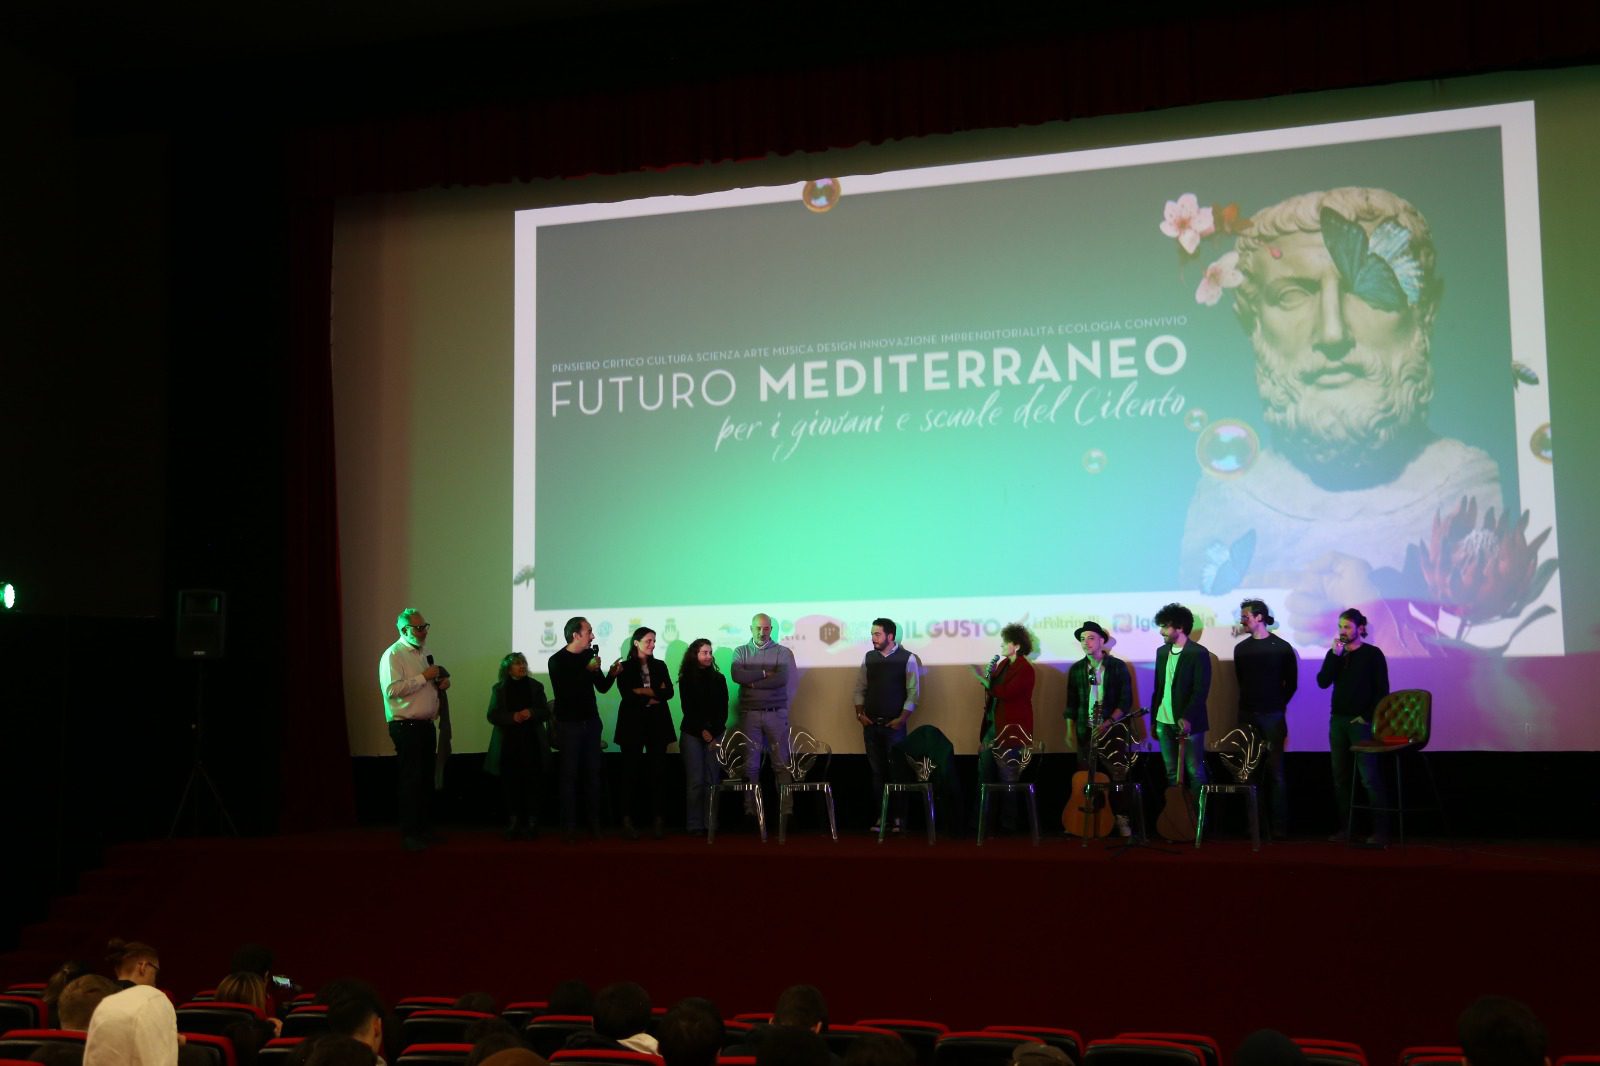 Futuro Mediterraneo, presentato ad Agropoli il progetto di rigenerazione culturale e innovazione nel Cilento